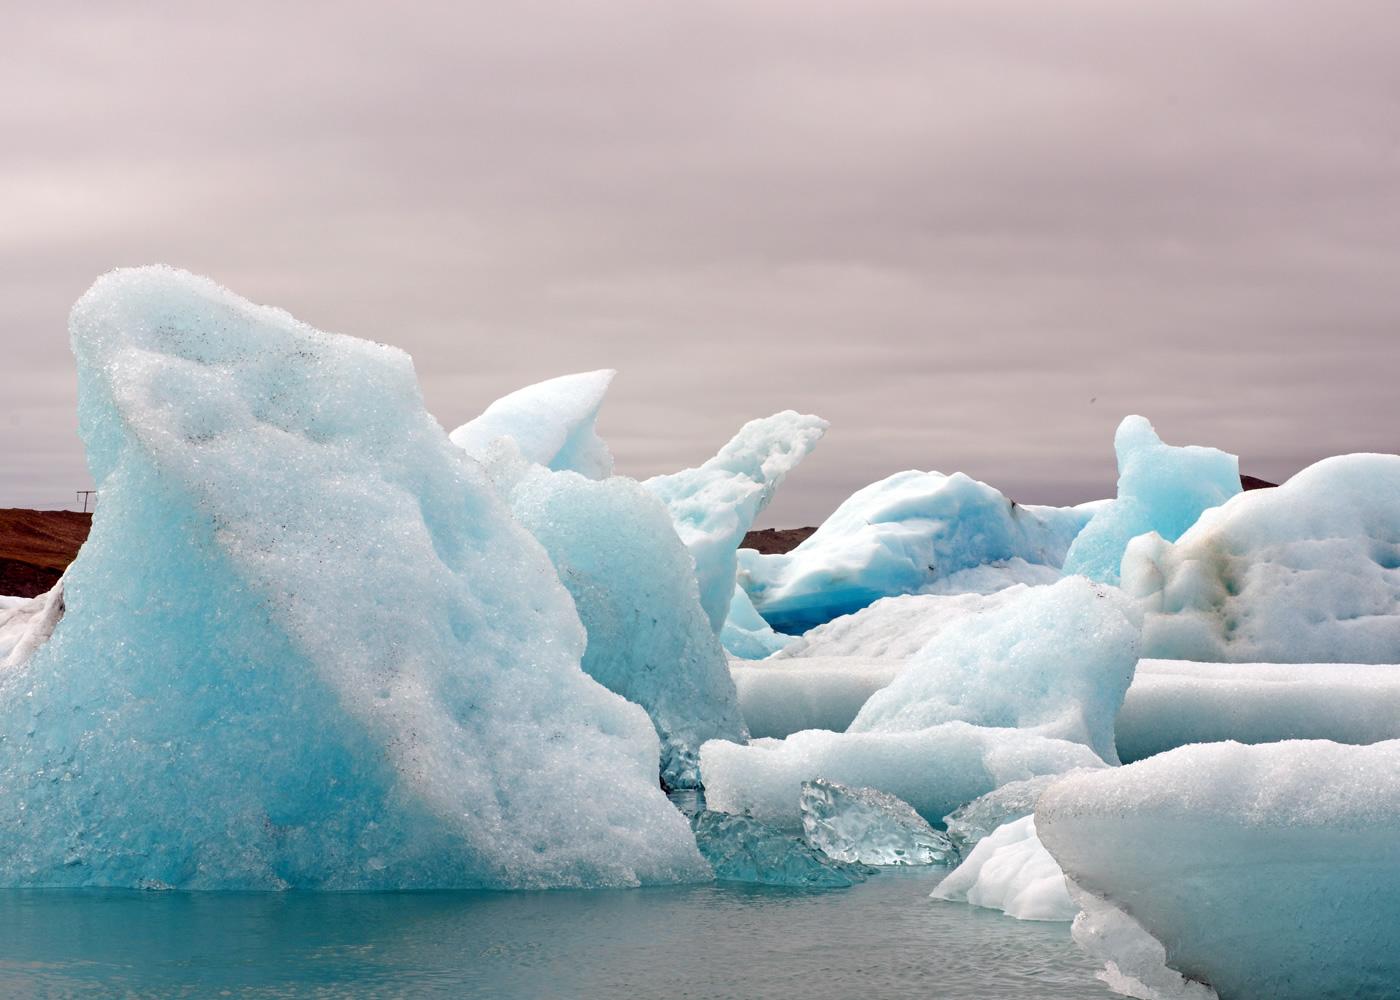 Beeindruckende Eisblcke schwimmen auf dem Wasser - Lupe Reisen